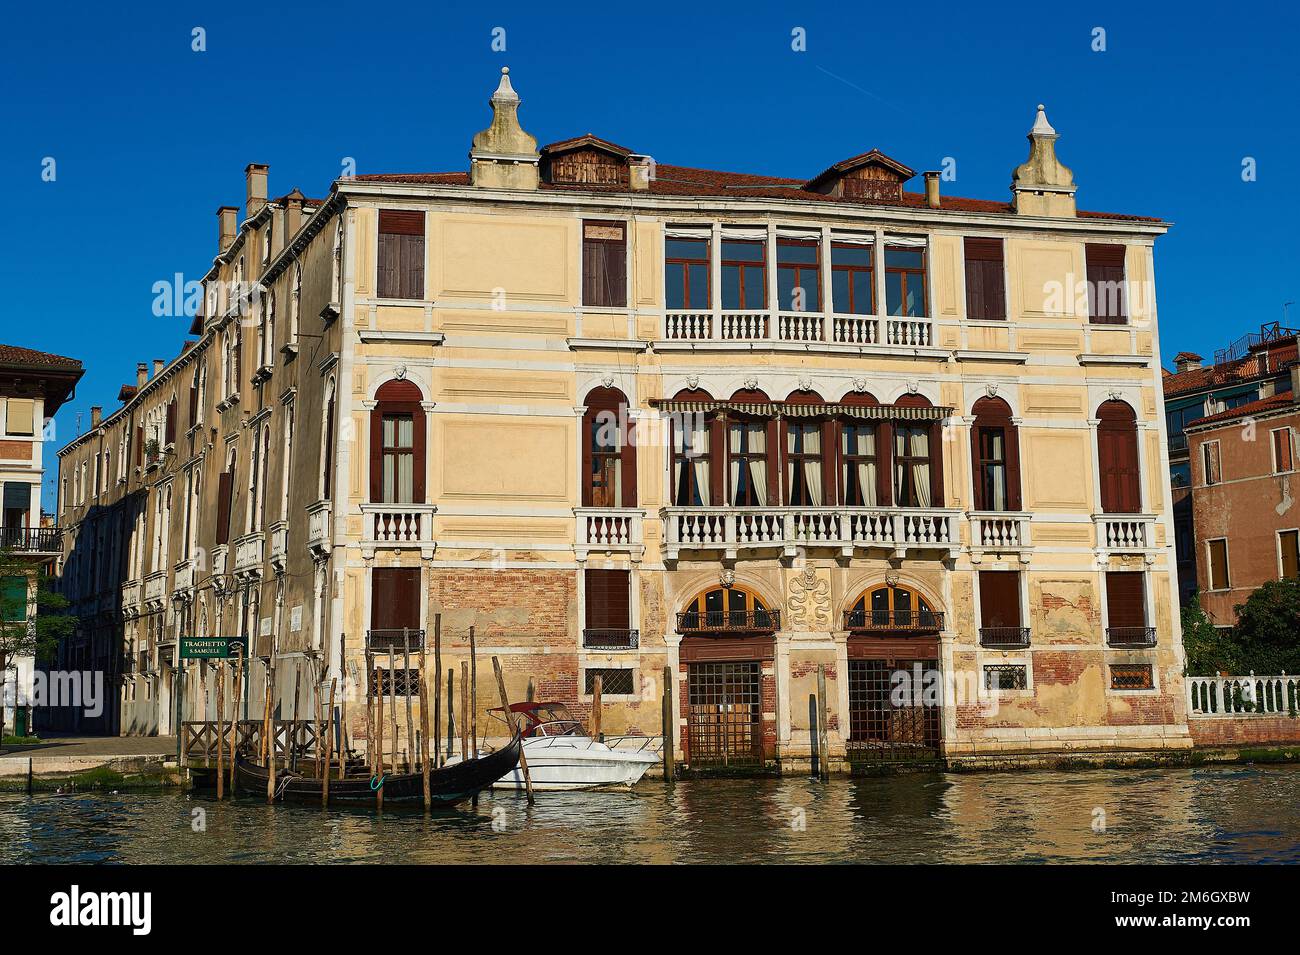 Blick auf eine typisch venezianische Fassade mit durch Wasser beschädigter Fassade und Holzpier für kleine Boote Stockfoto